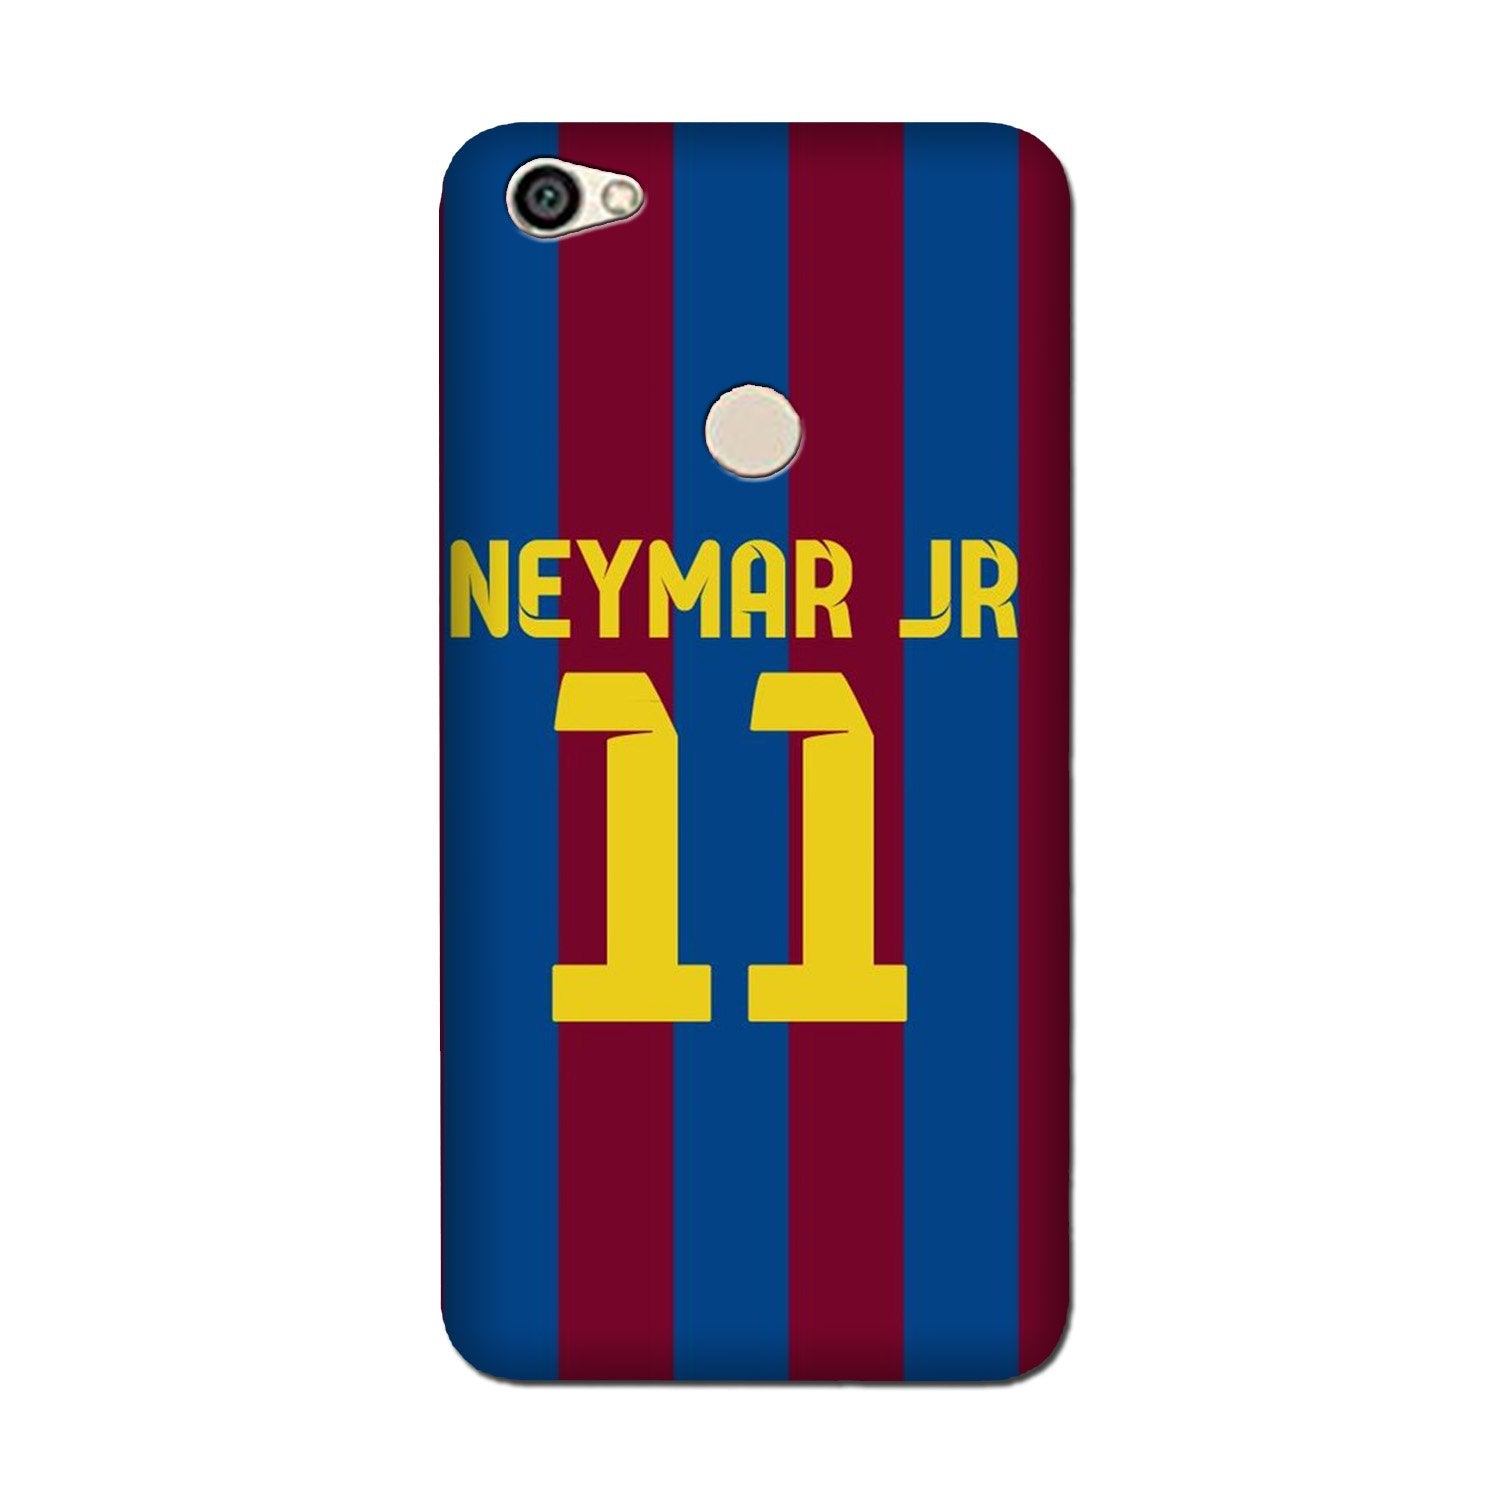 Neymar Jr Case for Oppo F7(Design - 162)